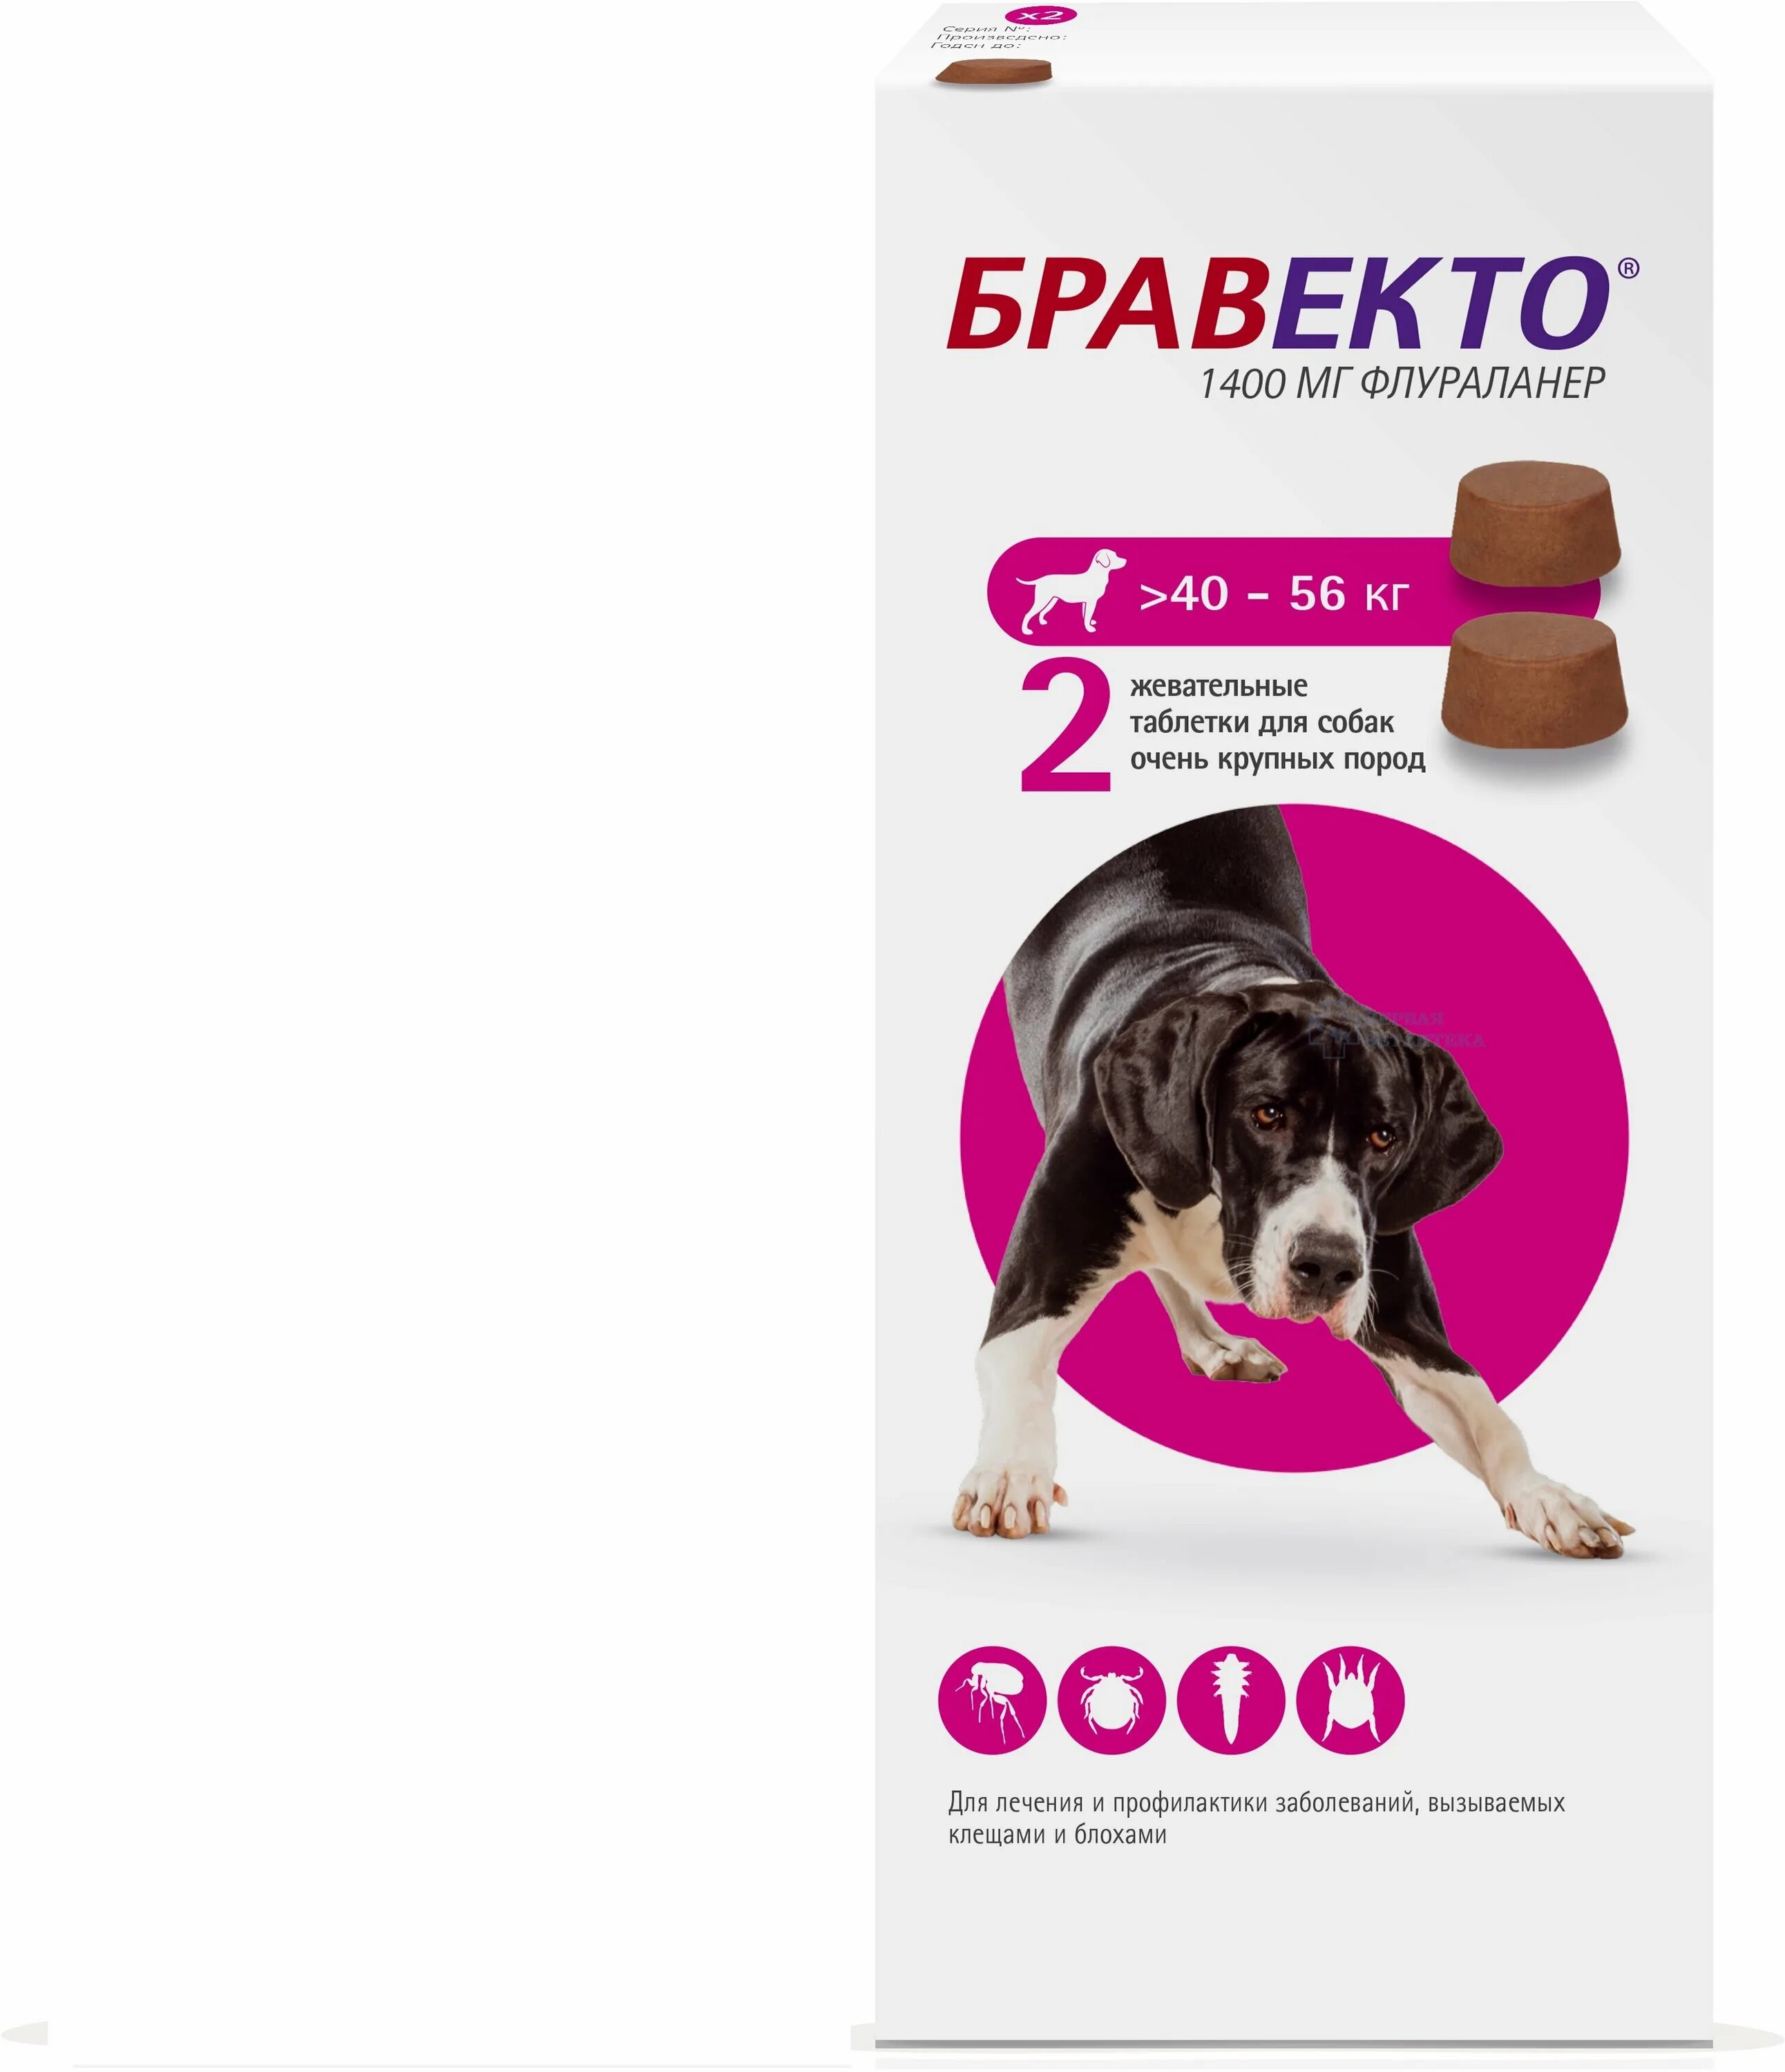 Бравекто 1400мг таблетка инсектоакарицидная д/собак 40-56кг. Бравекто таблетки для собак 40-56. Таблетка Бравекто для собак 20-40 2 таблетка. Бравекто (MSD animal Health) таблетки от блох и клещей для собак 40-56 кг.